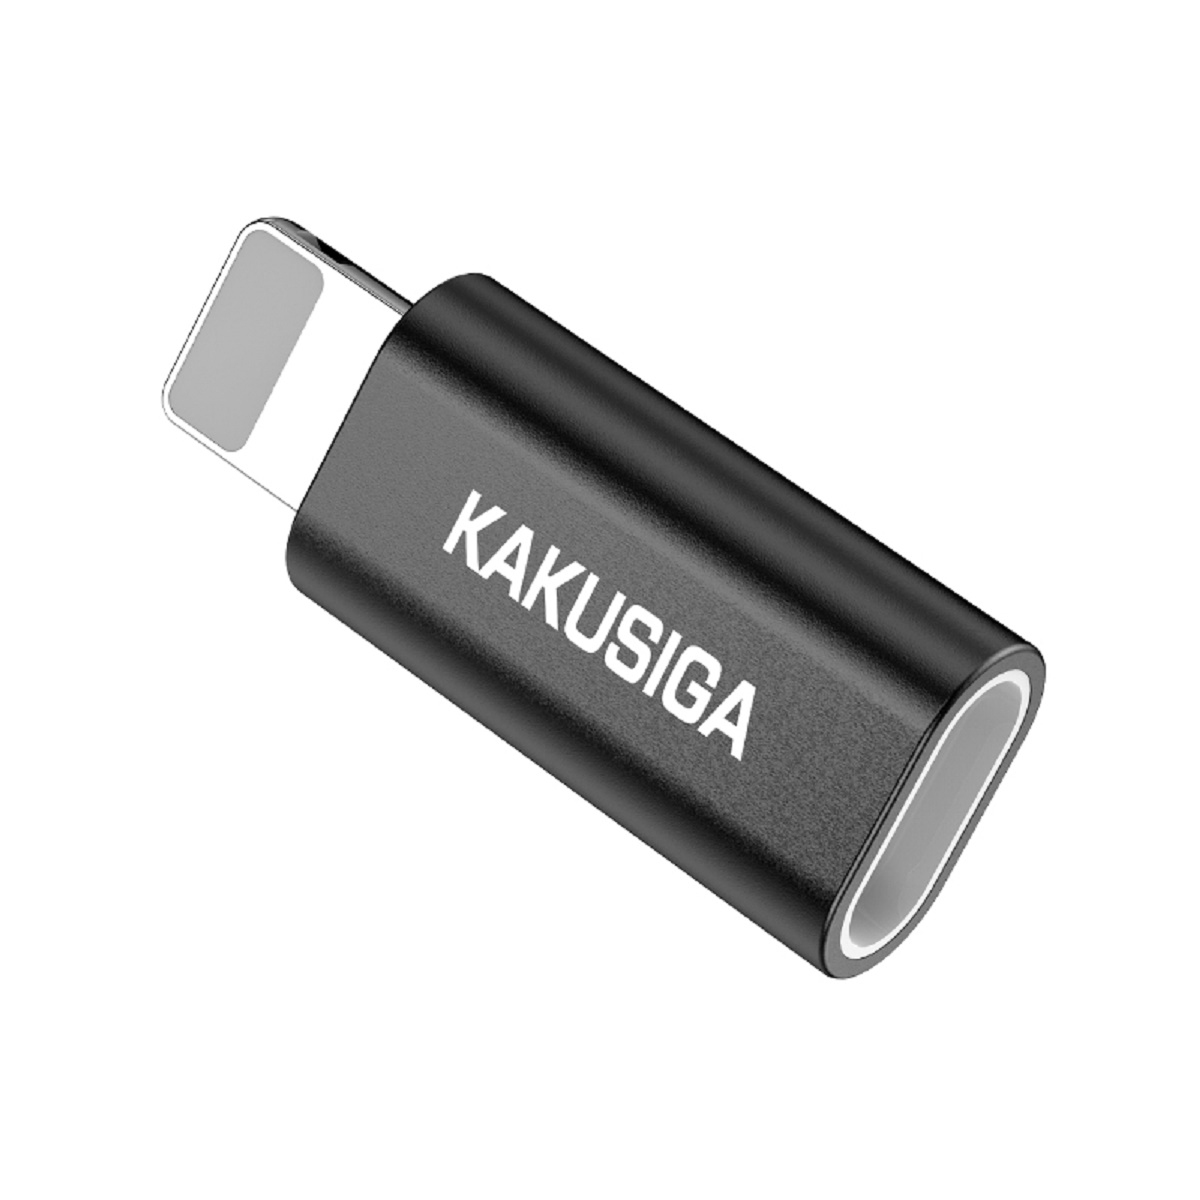 KAKU KAKU Adapter KSC-559 Chenxing Schwarz Micro iPhone-Anschluss Schwarz - auf USB Adapter, Kabel-Adapter